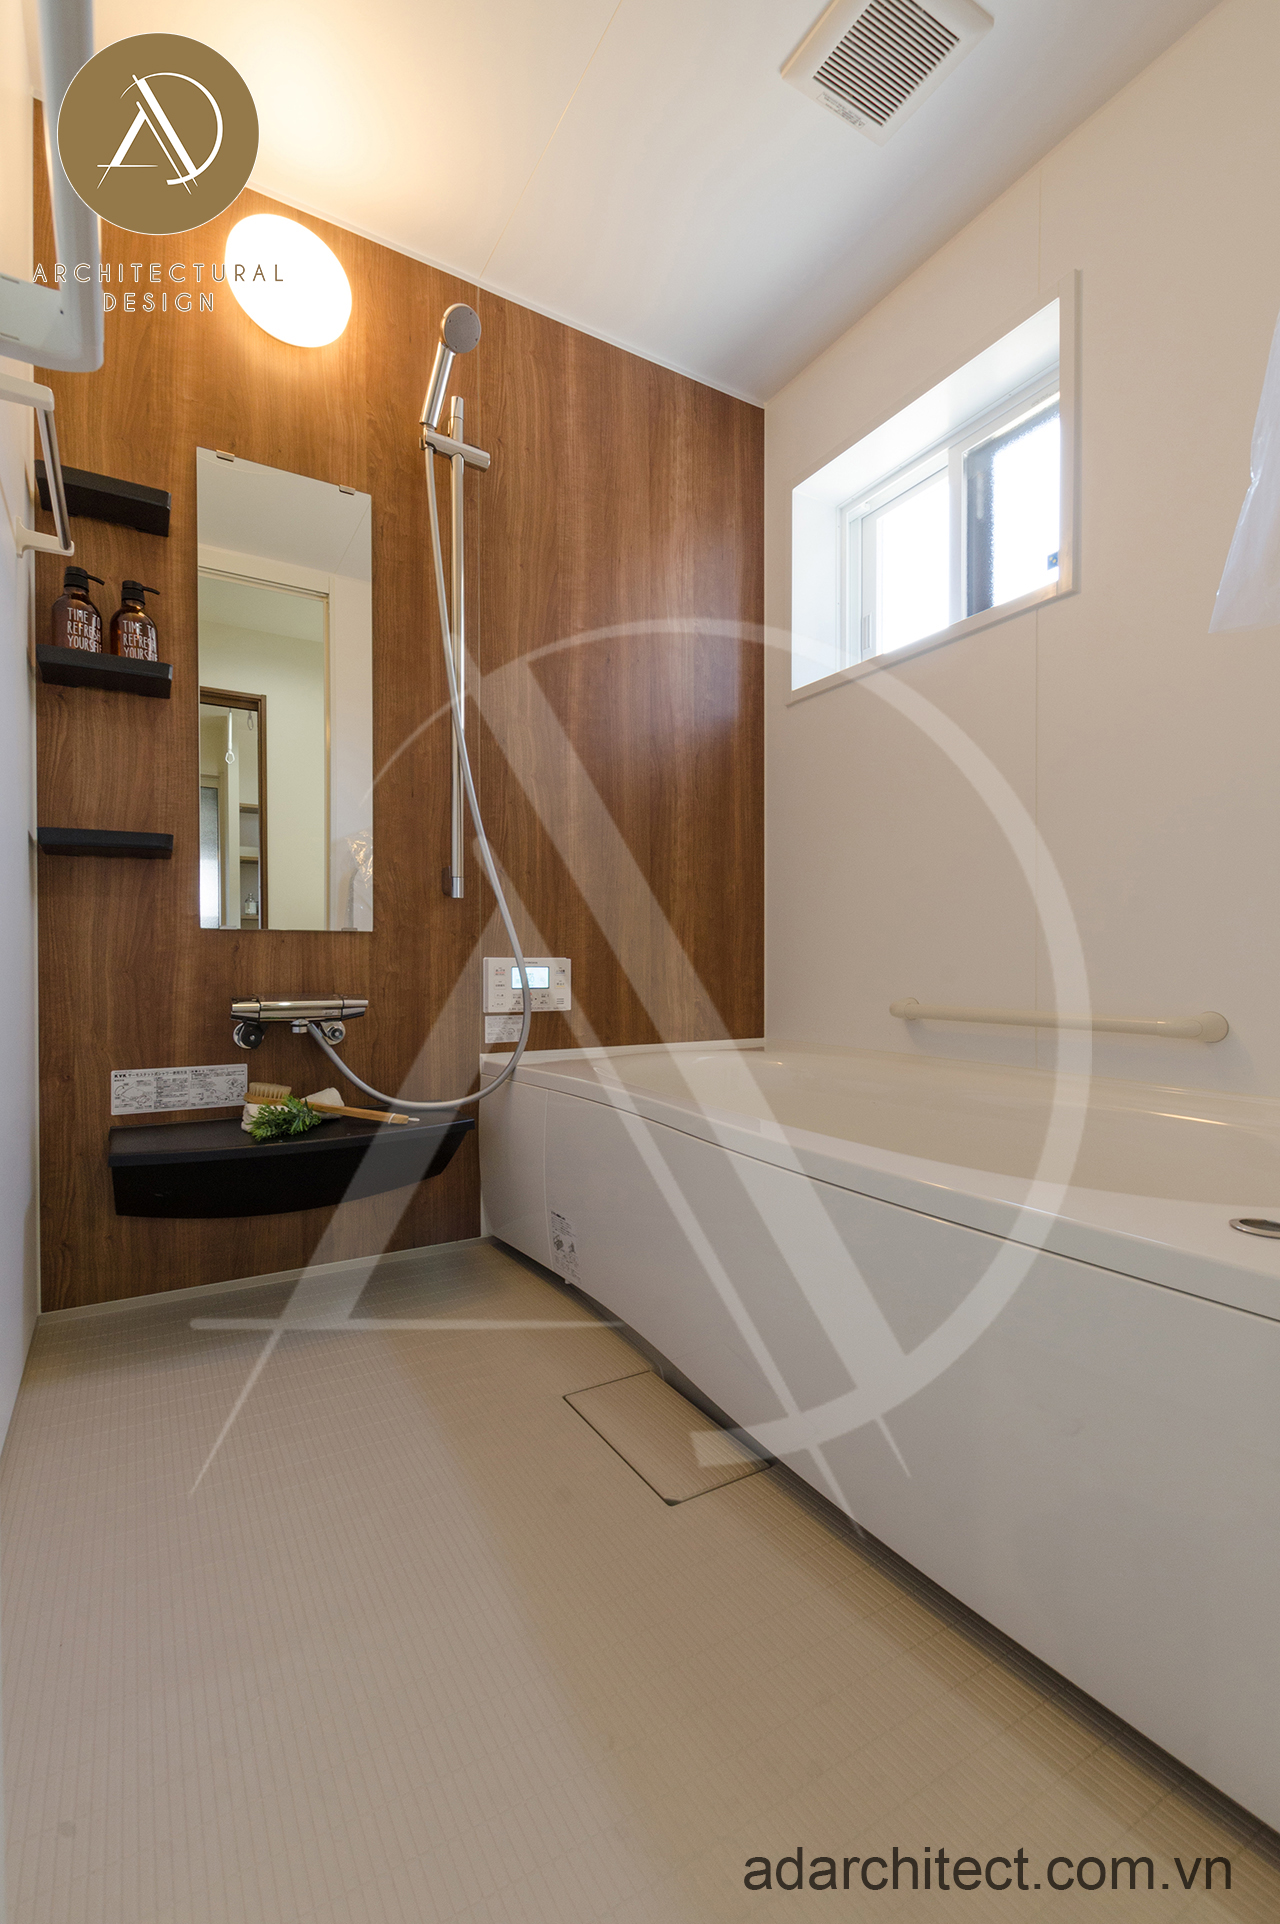 Nội thất nhà tắm đơn giản nhưng vẫn đầy đủ cho mẫu nhà cấp 4 diện tích 6x20m